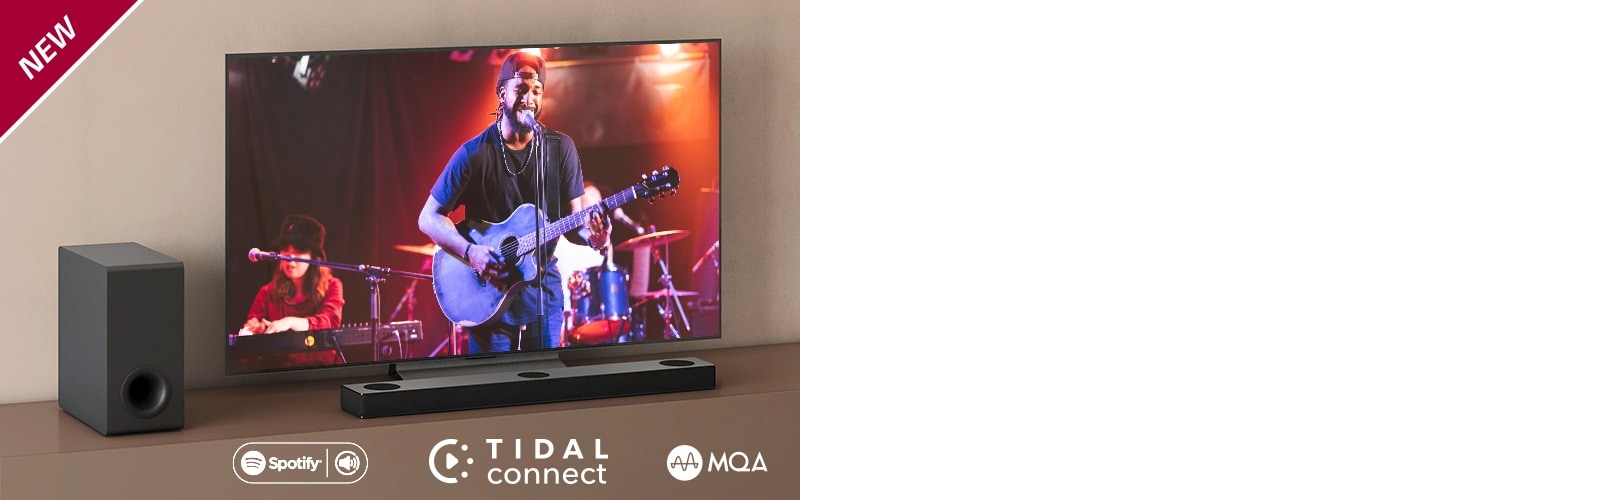 Der er placeret et LG TV på den brune hylde og en LG Sound Bar S80QY foran TV'et. Der er placeret en subwoofer på venstre side af TV’et. TV’et viser en koncertscene. NYT-mærke vises i øverste venstre hjørne.